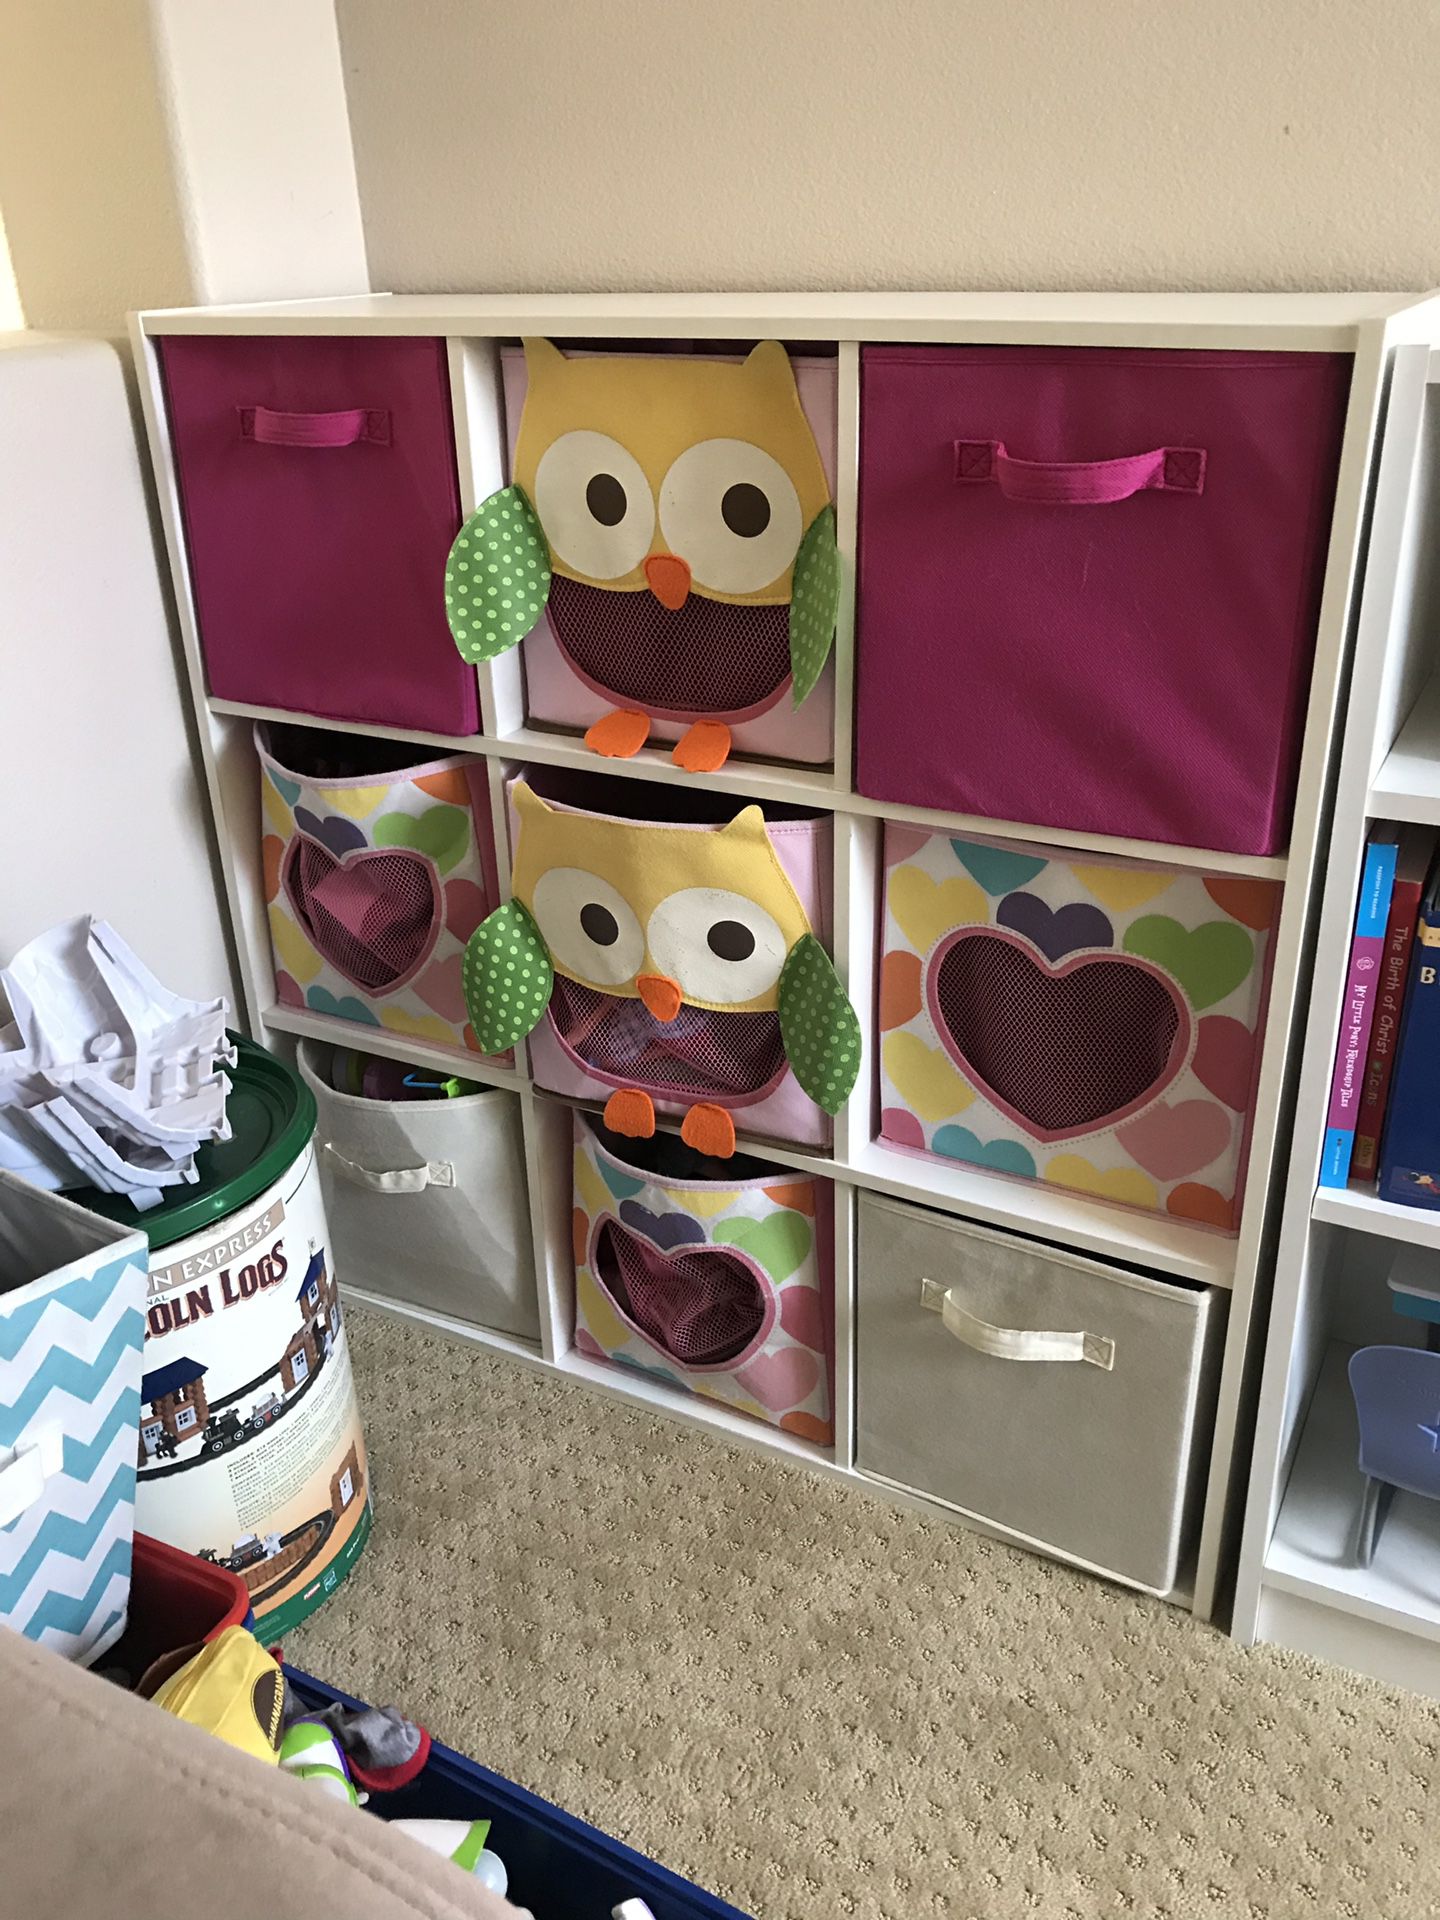 Nice shelf with storage baskets